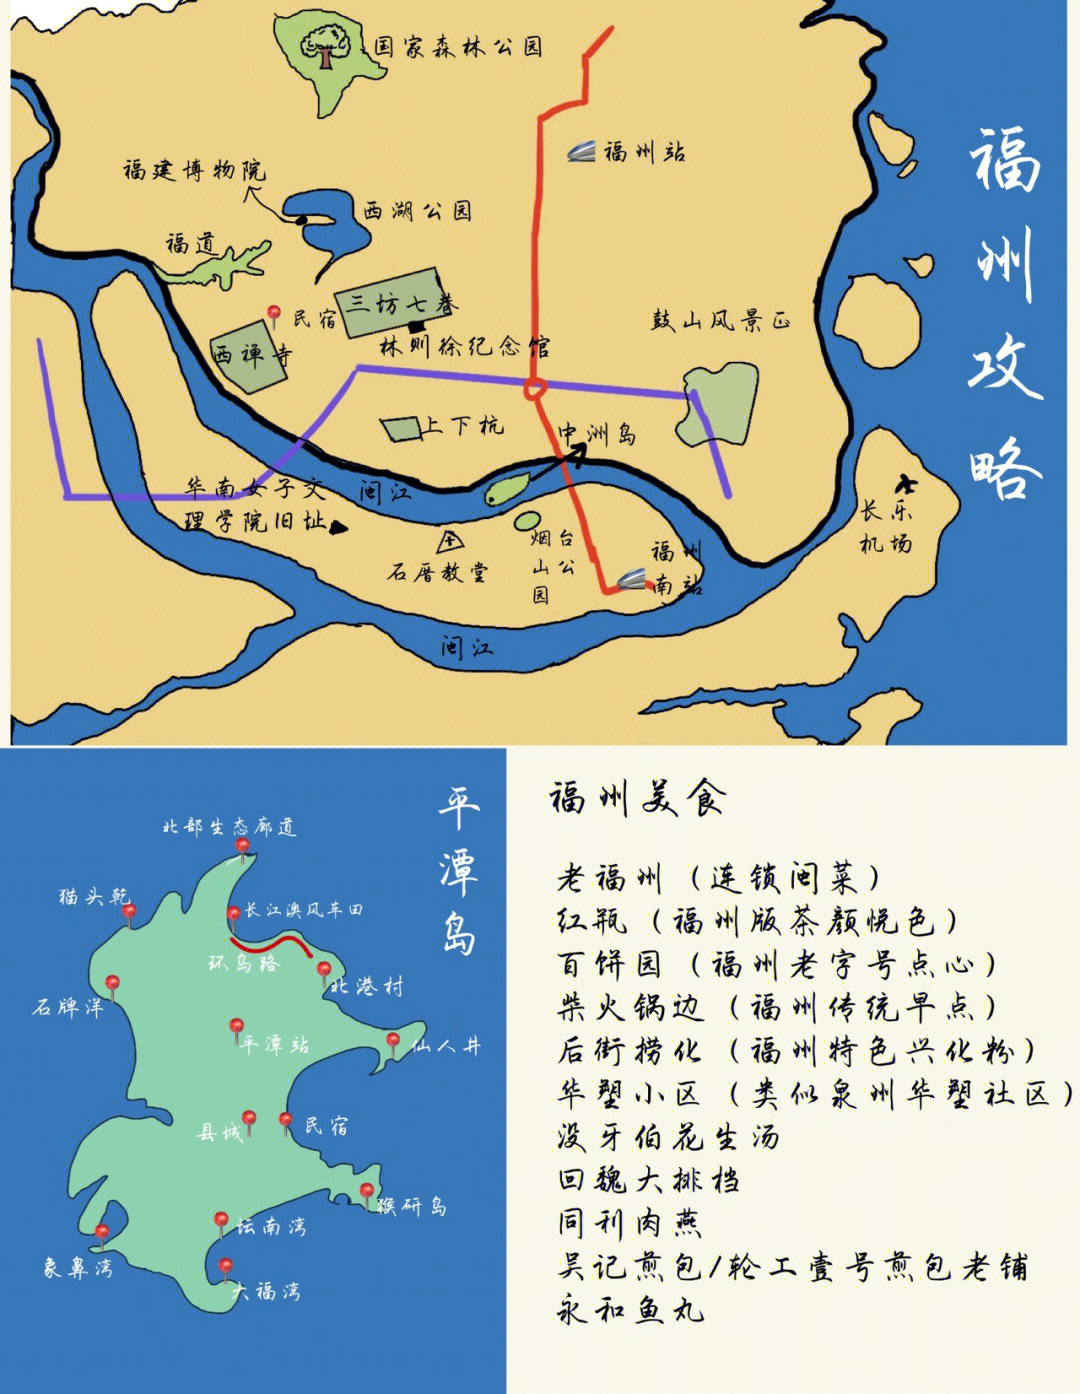 福州福道地图图片